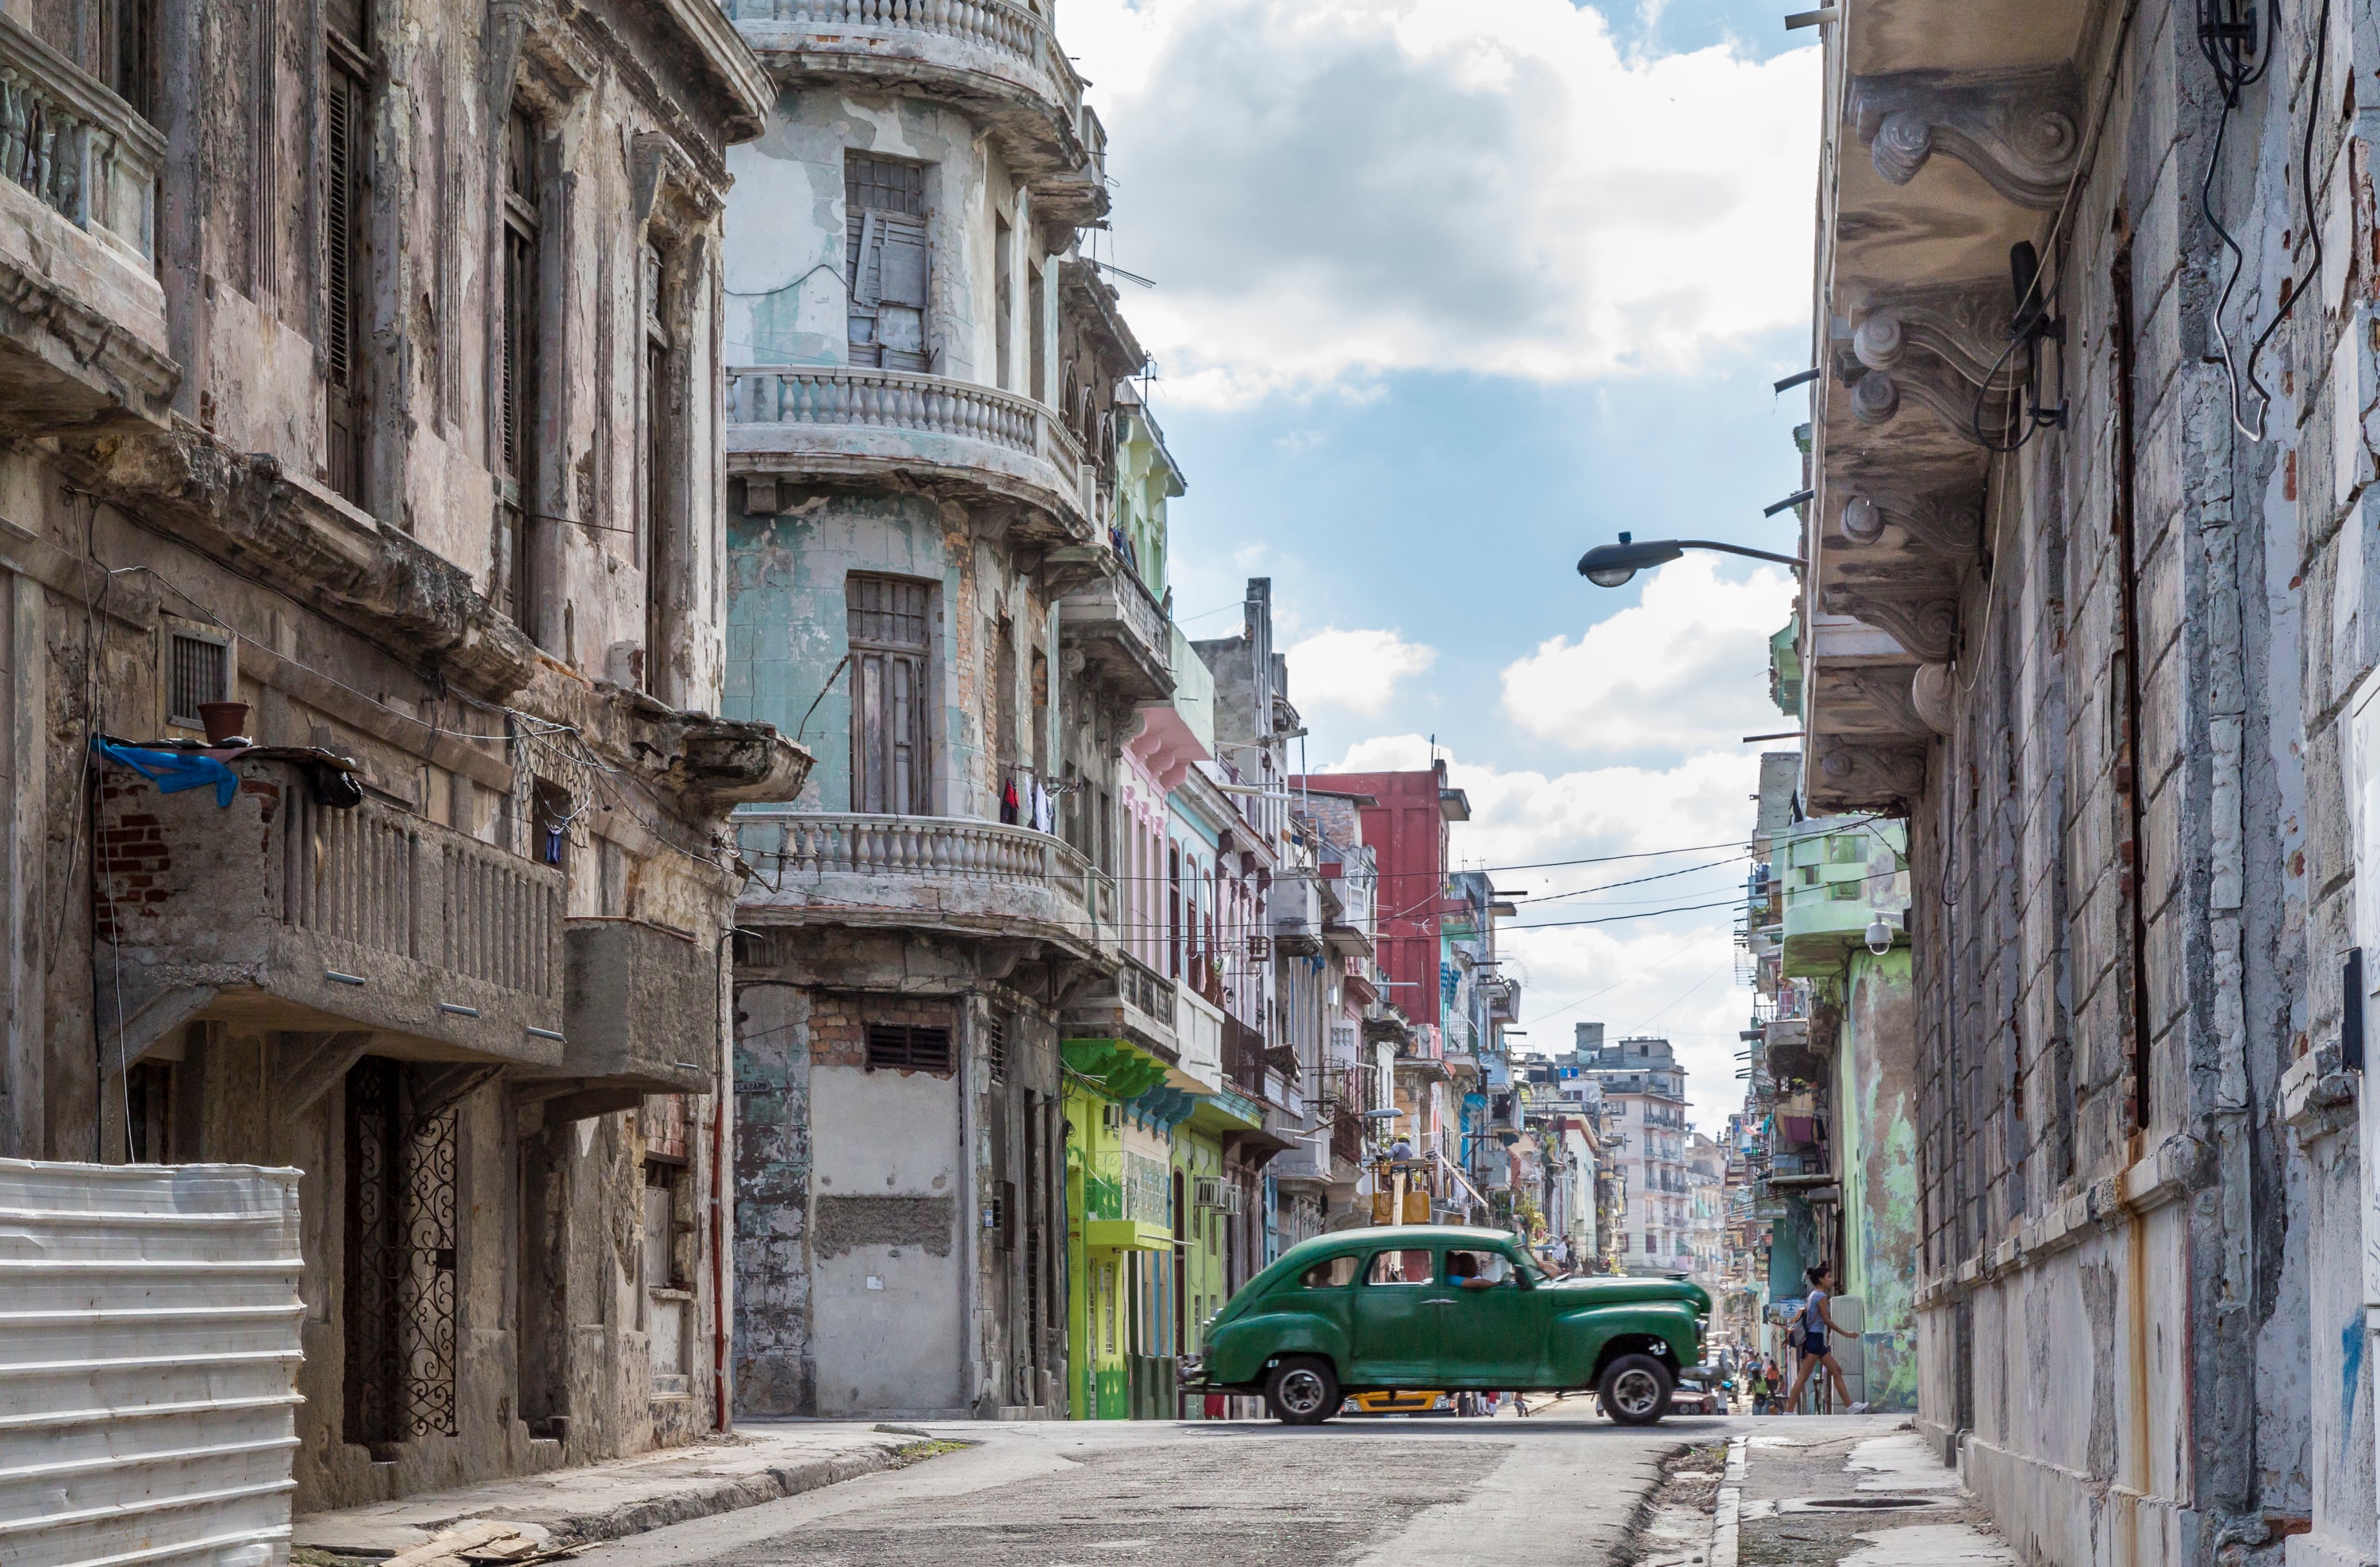 Gate med slitte, men fargerike hus i Cuba. Midt i gaten kjører en grønn bil.